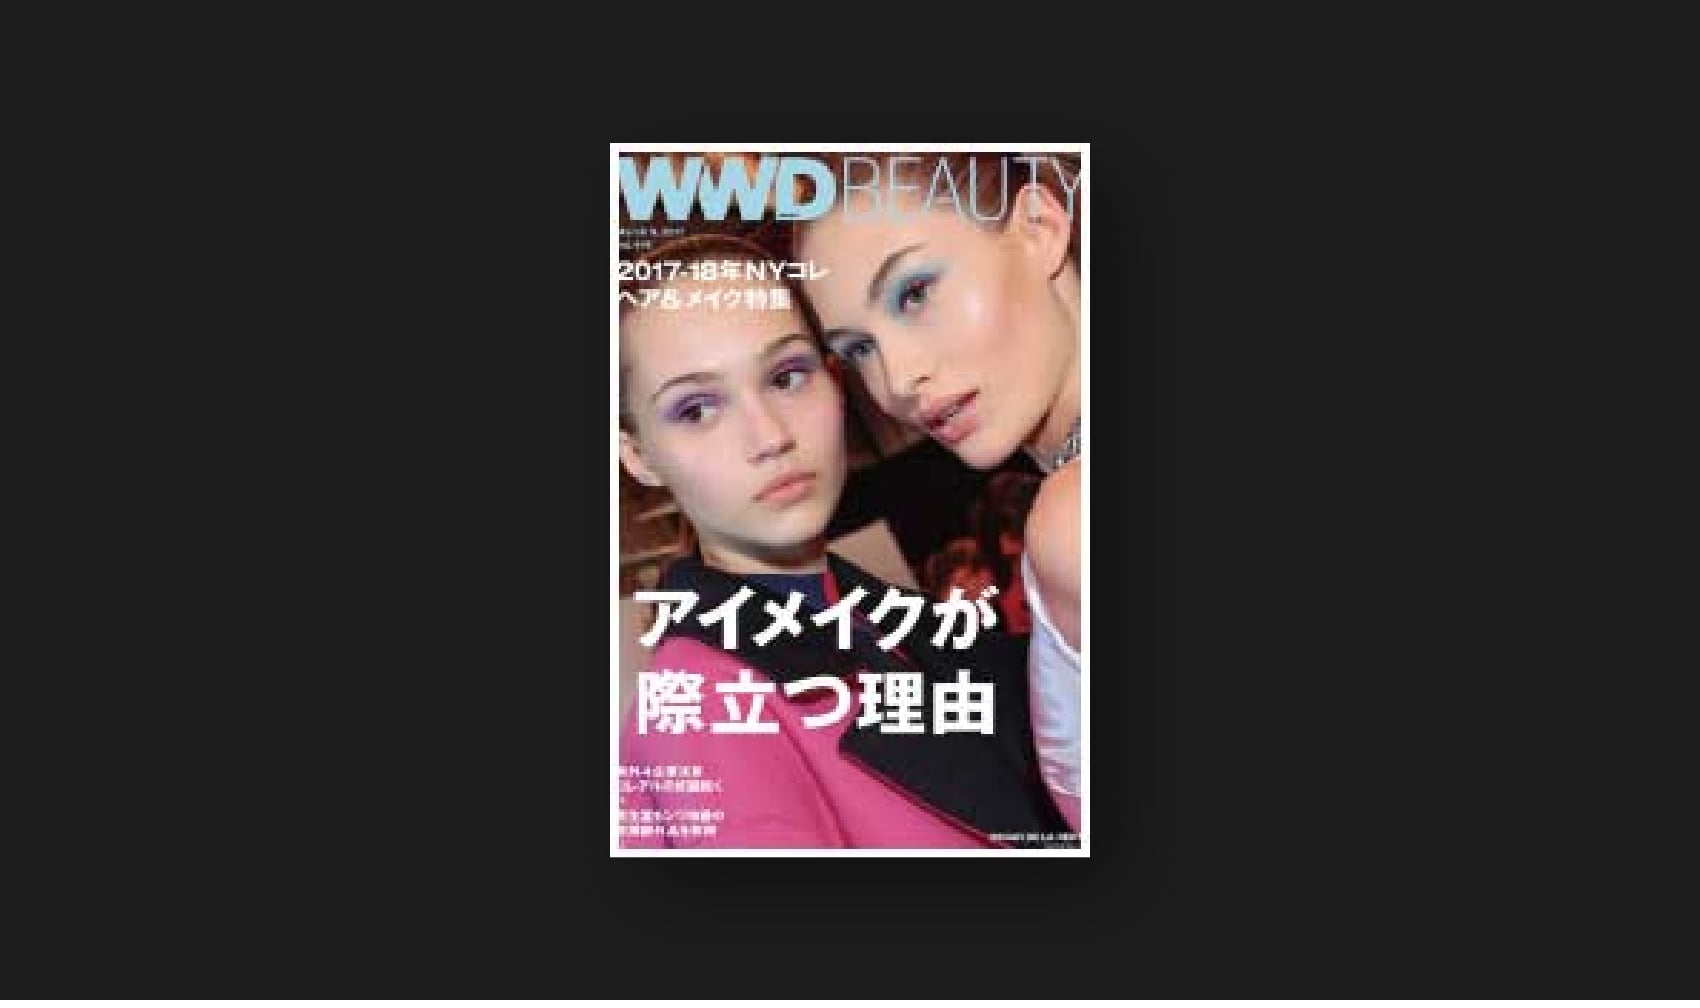 『WWD JAPAN Beauty』vol.446